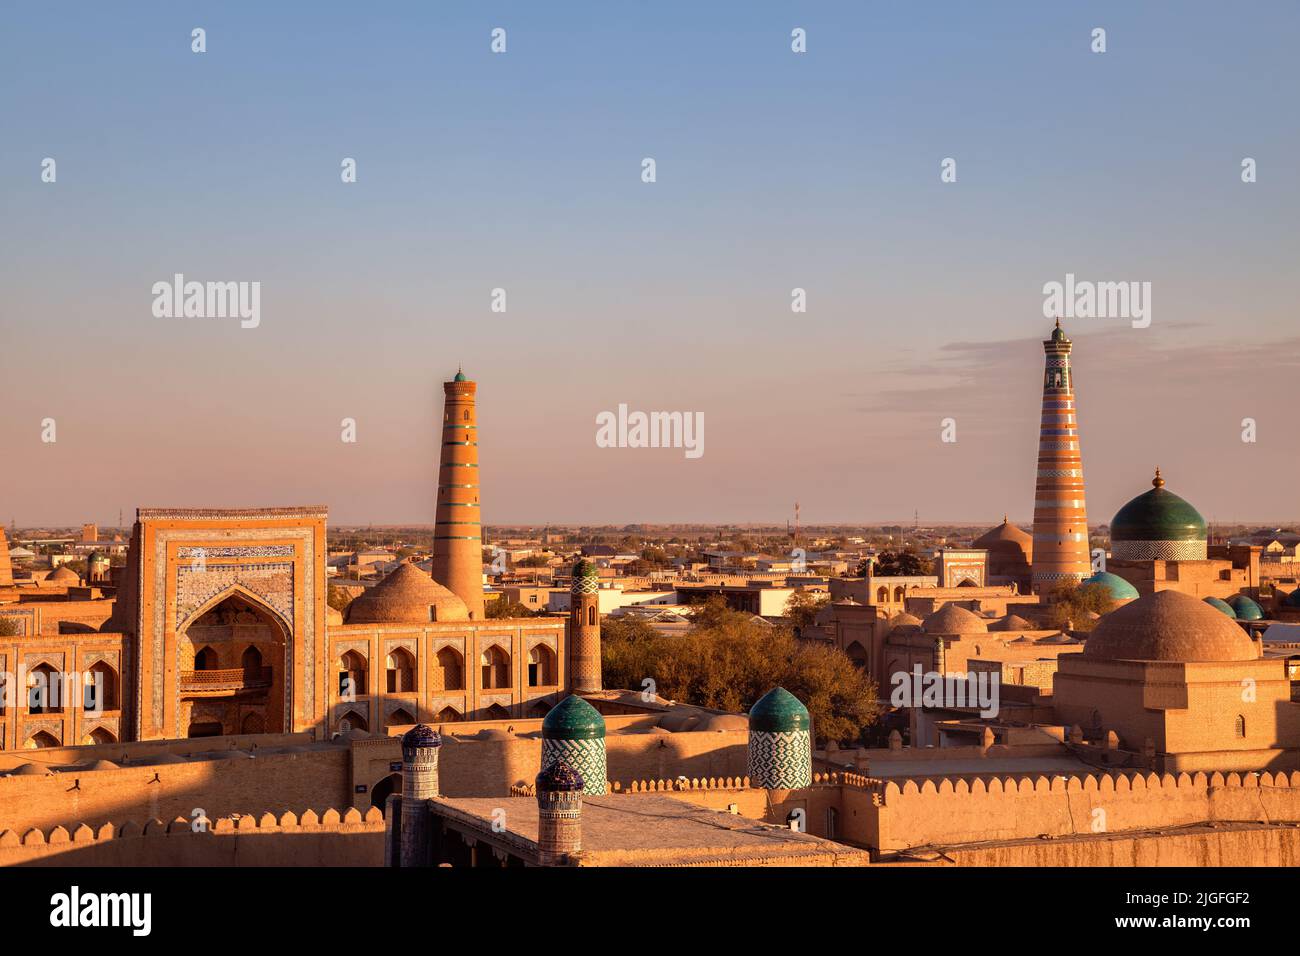 Vista de la puesta de sol desde arriba en la fortaleza Itchan Kala, el casco antiguo de Khiva, Uzbekistán Foto de stock